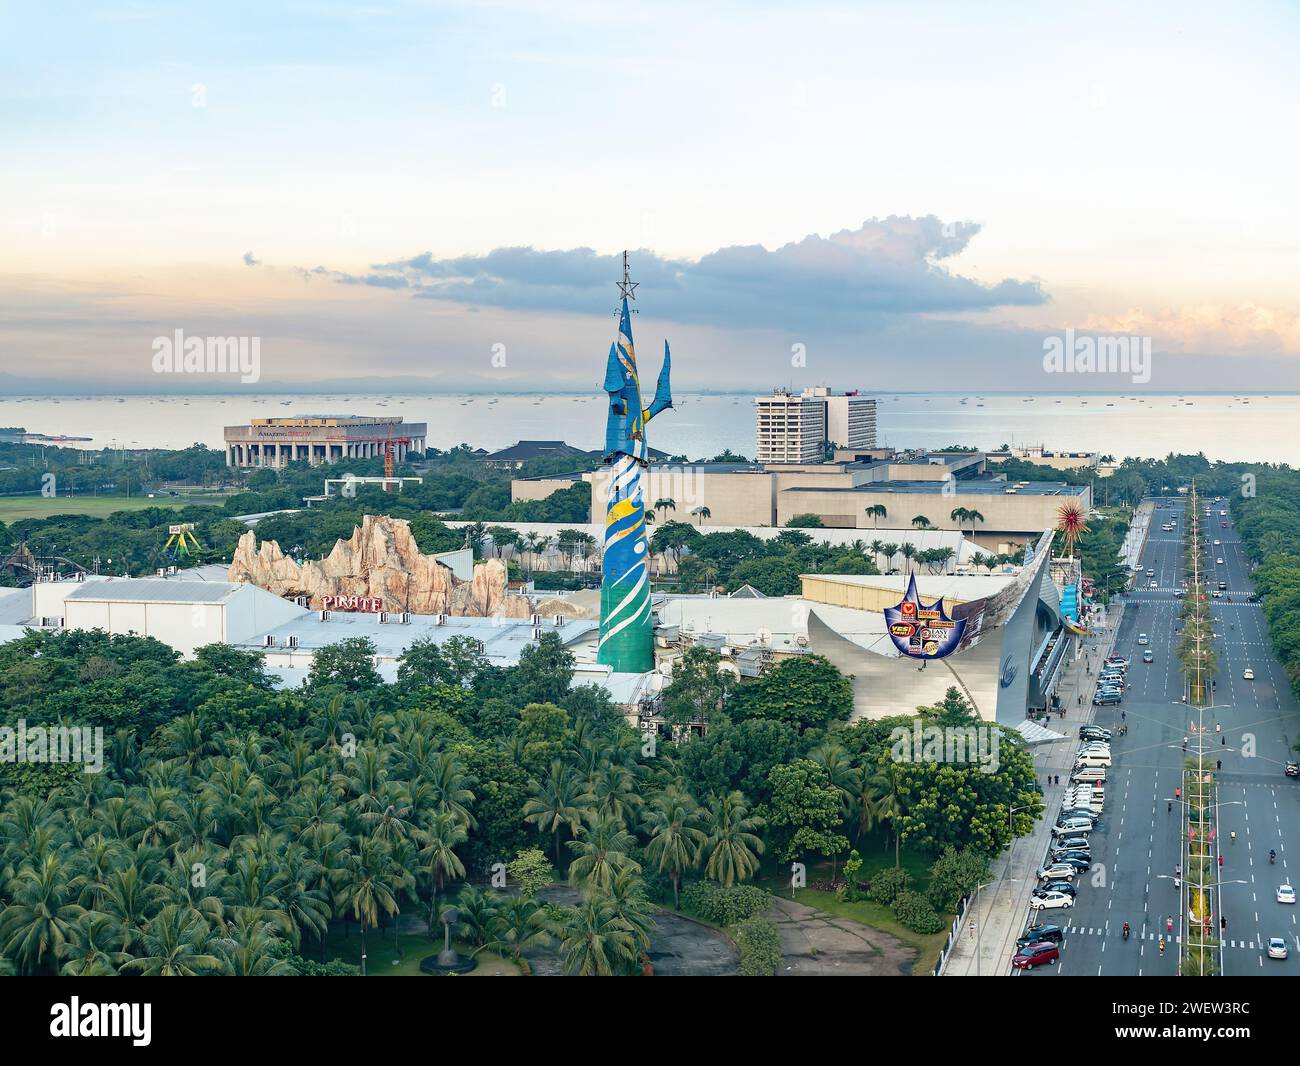 Blick auf die westlichen Teile von Pasay, Manila. Sichtbare Sehenswürdigkeiten sind Star City, Philippine International Convention Center, Manila Film Center und Sofite Stockfoto